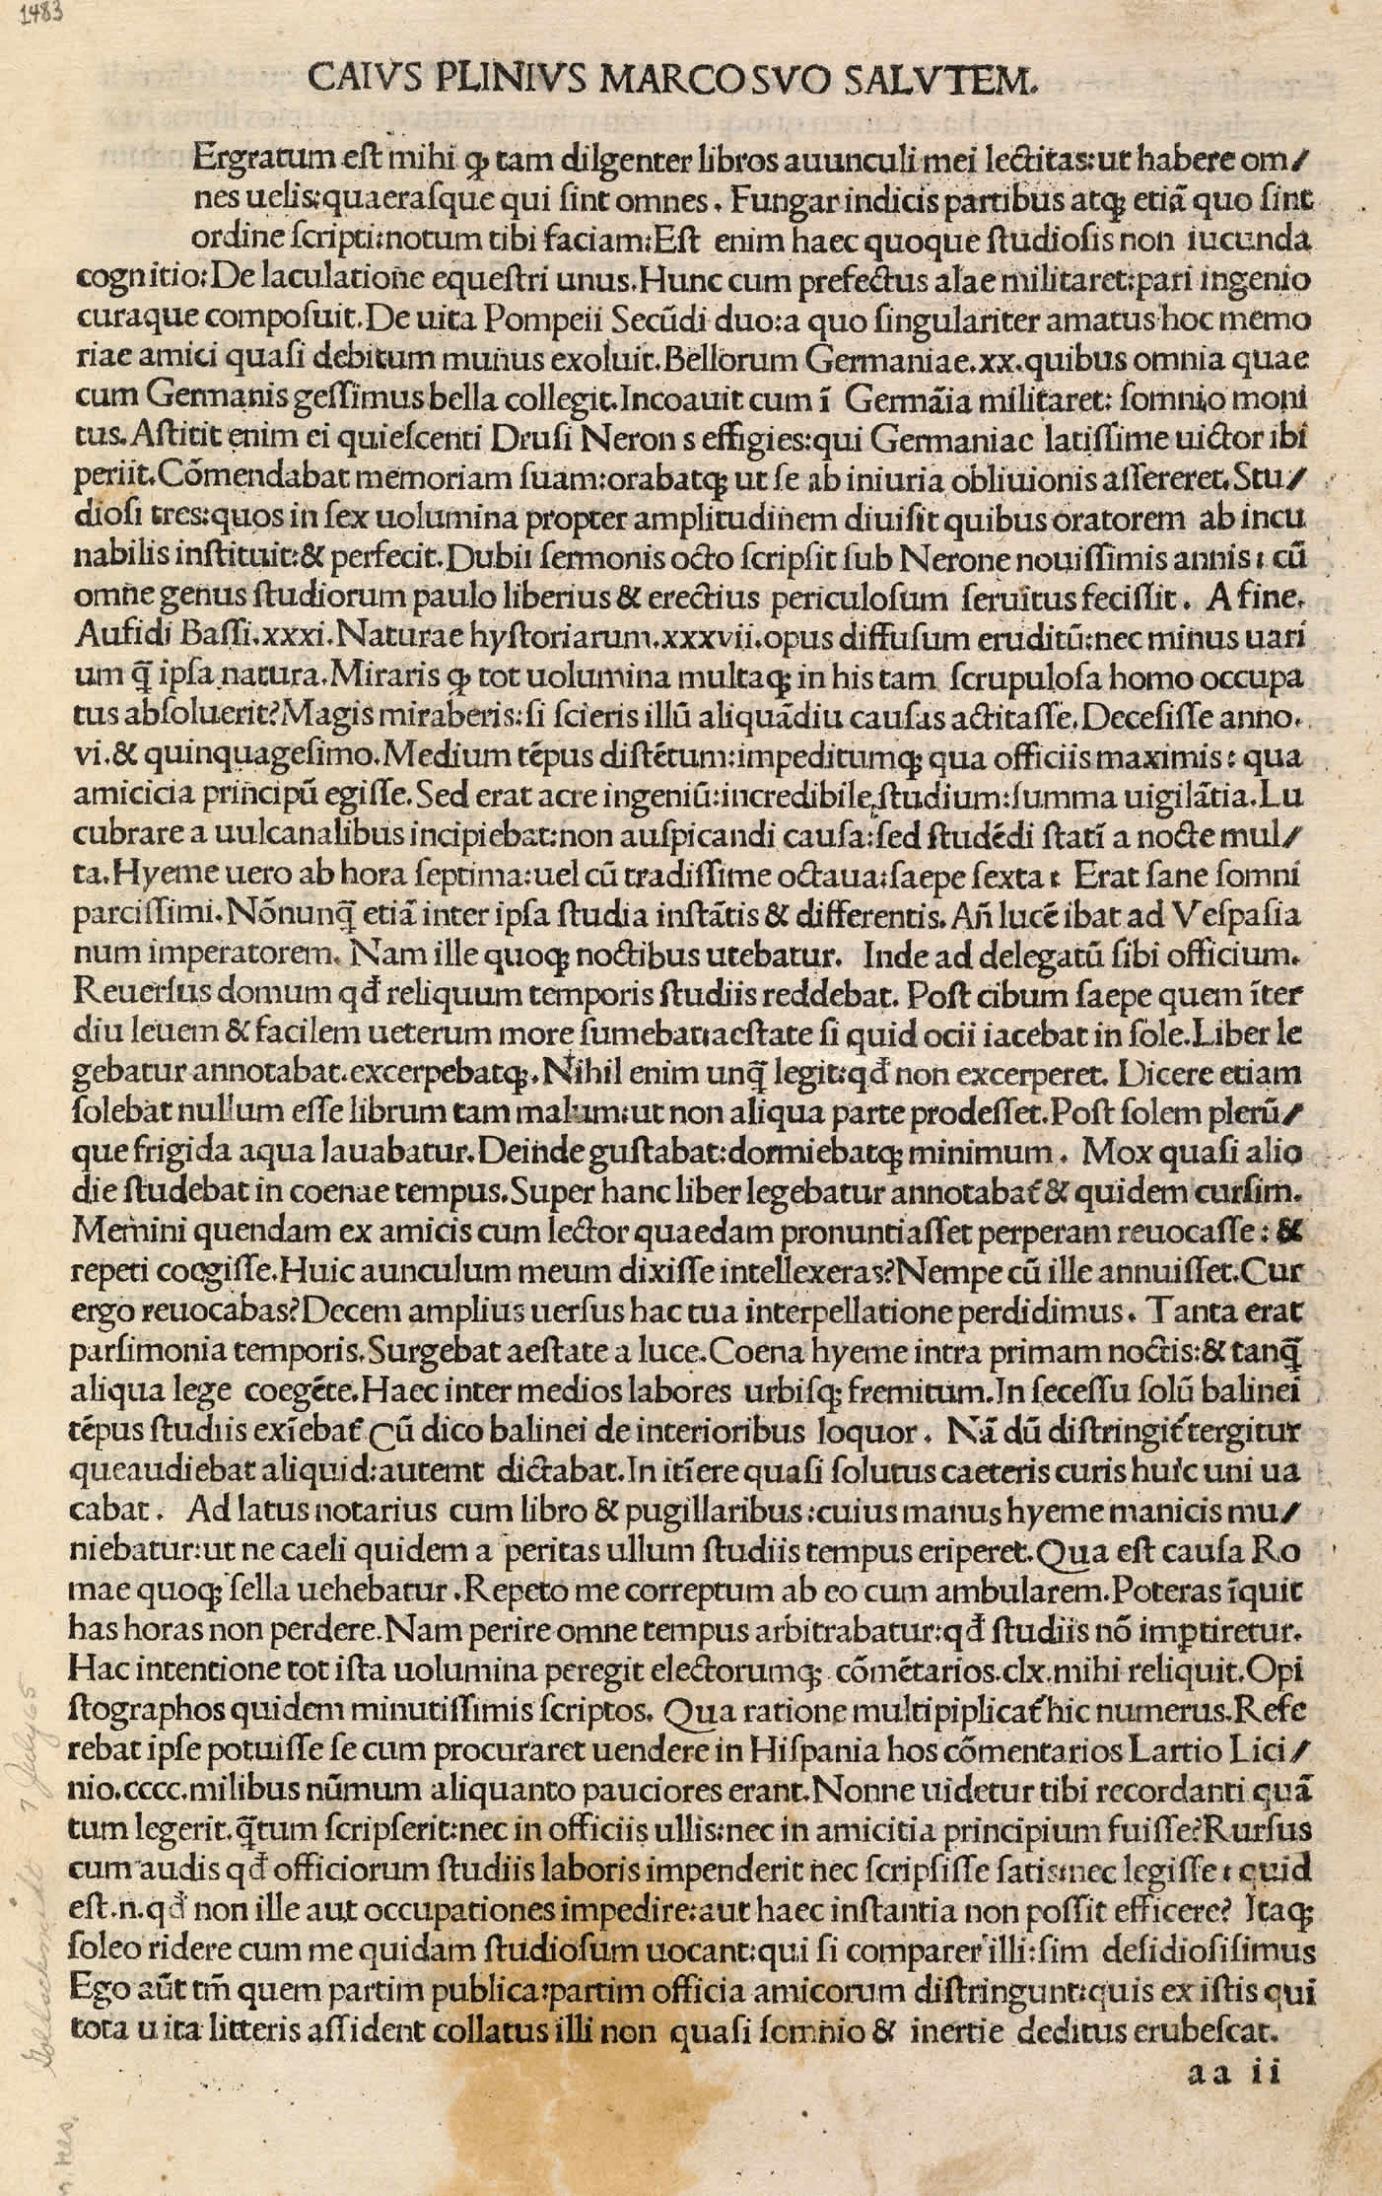 Image from GAIUS PLINIUS SECUNDUS. (23 - 79 A.D.). Naturalis Historiae. Venice: Rainaldi de Nouimagio, 1483.